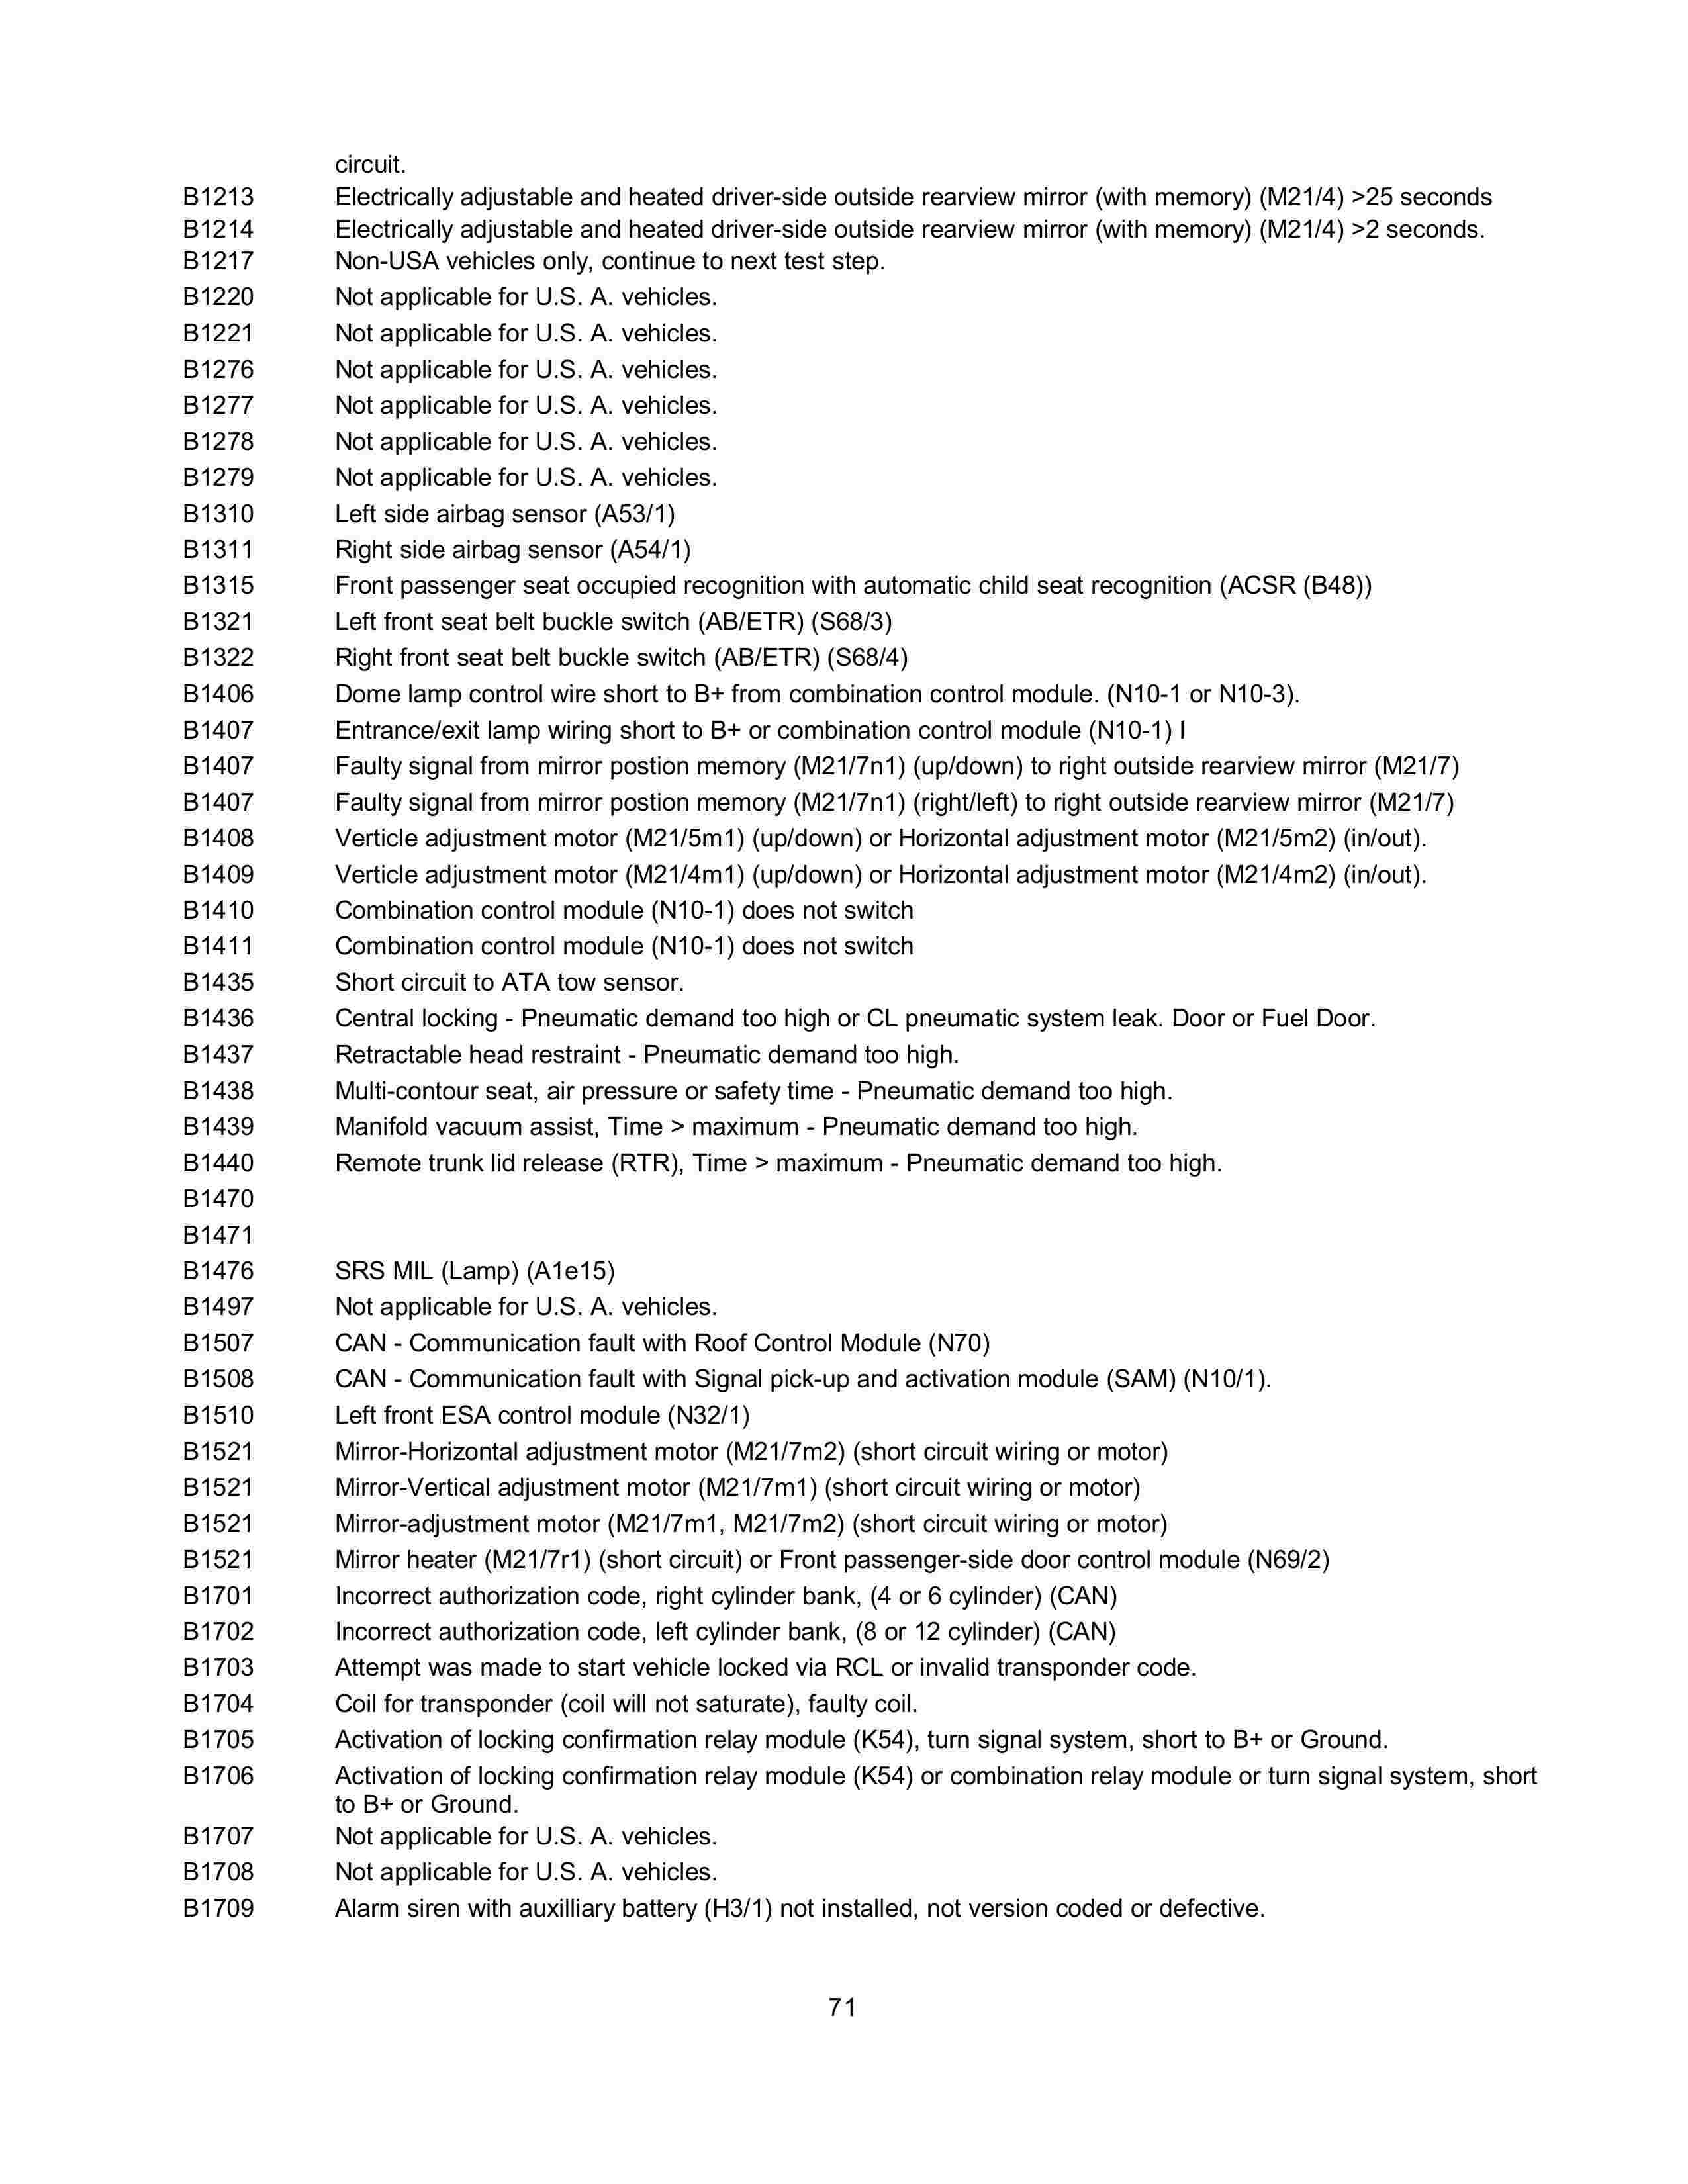 Lista de Códigos de falhas (fault codes) Mercedes-Benz 007112